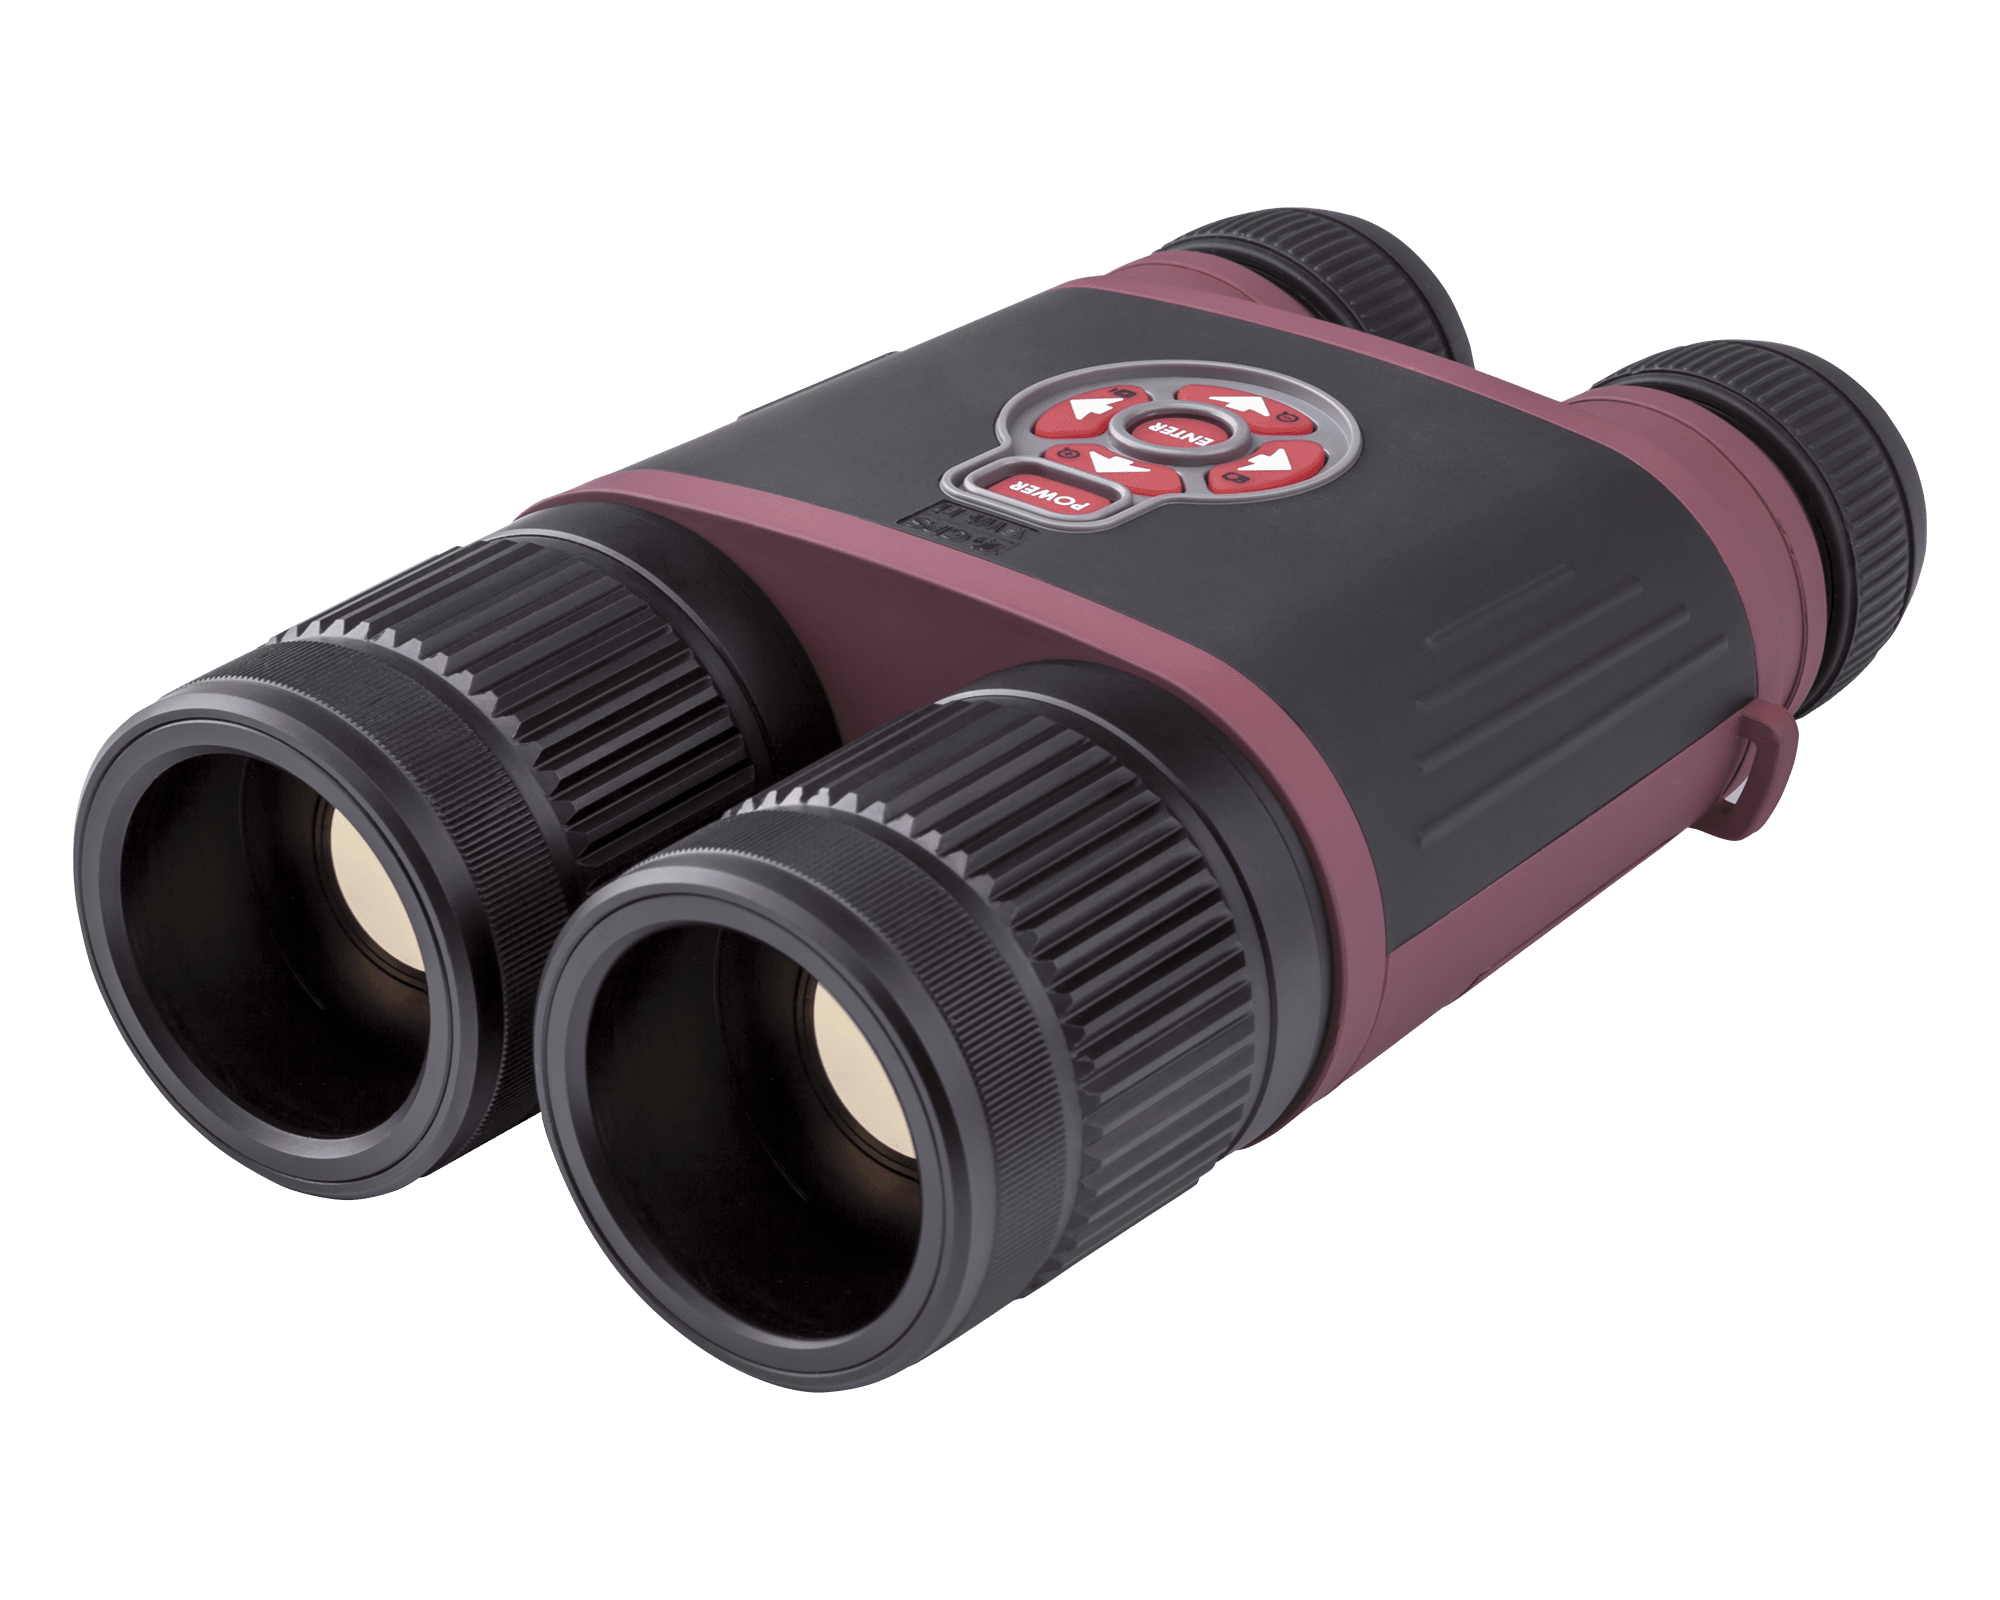 binox thd thermal binoculars